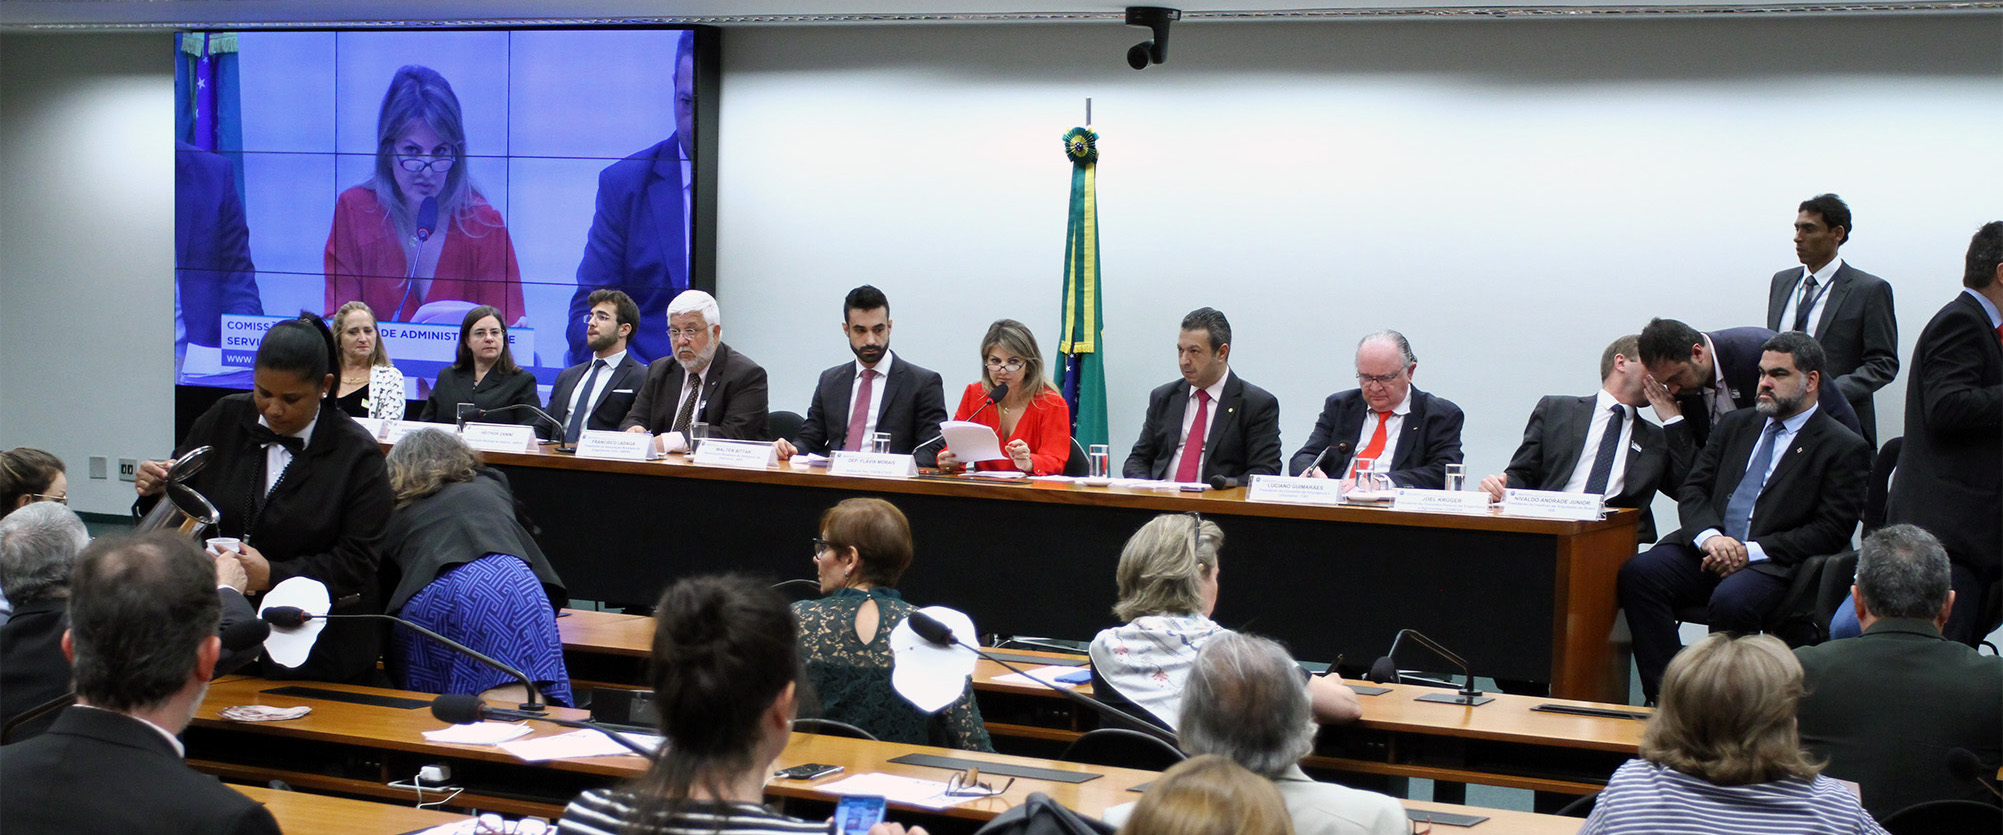 FNA defende interesses de arquitetos e urbanistas em Brasília